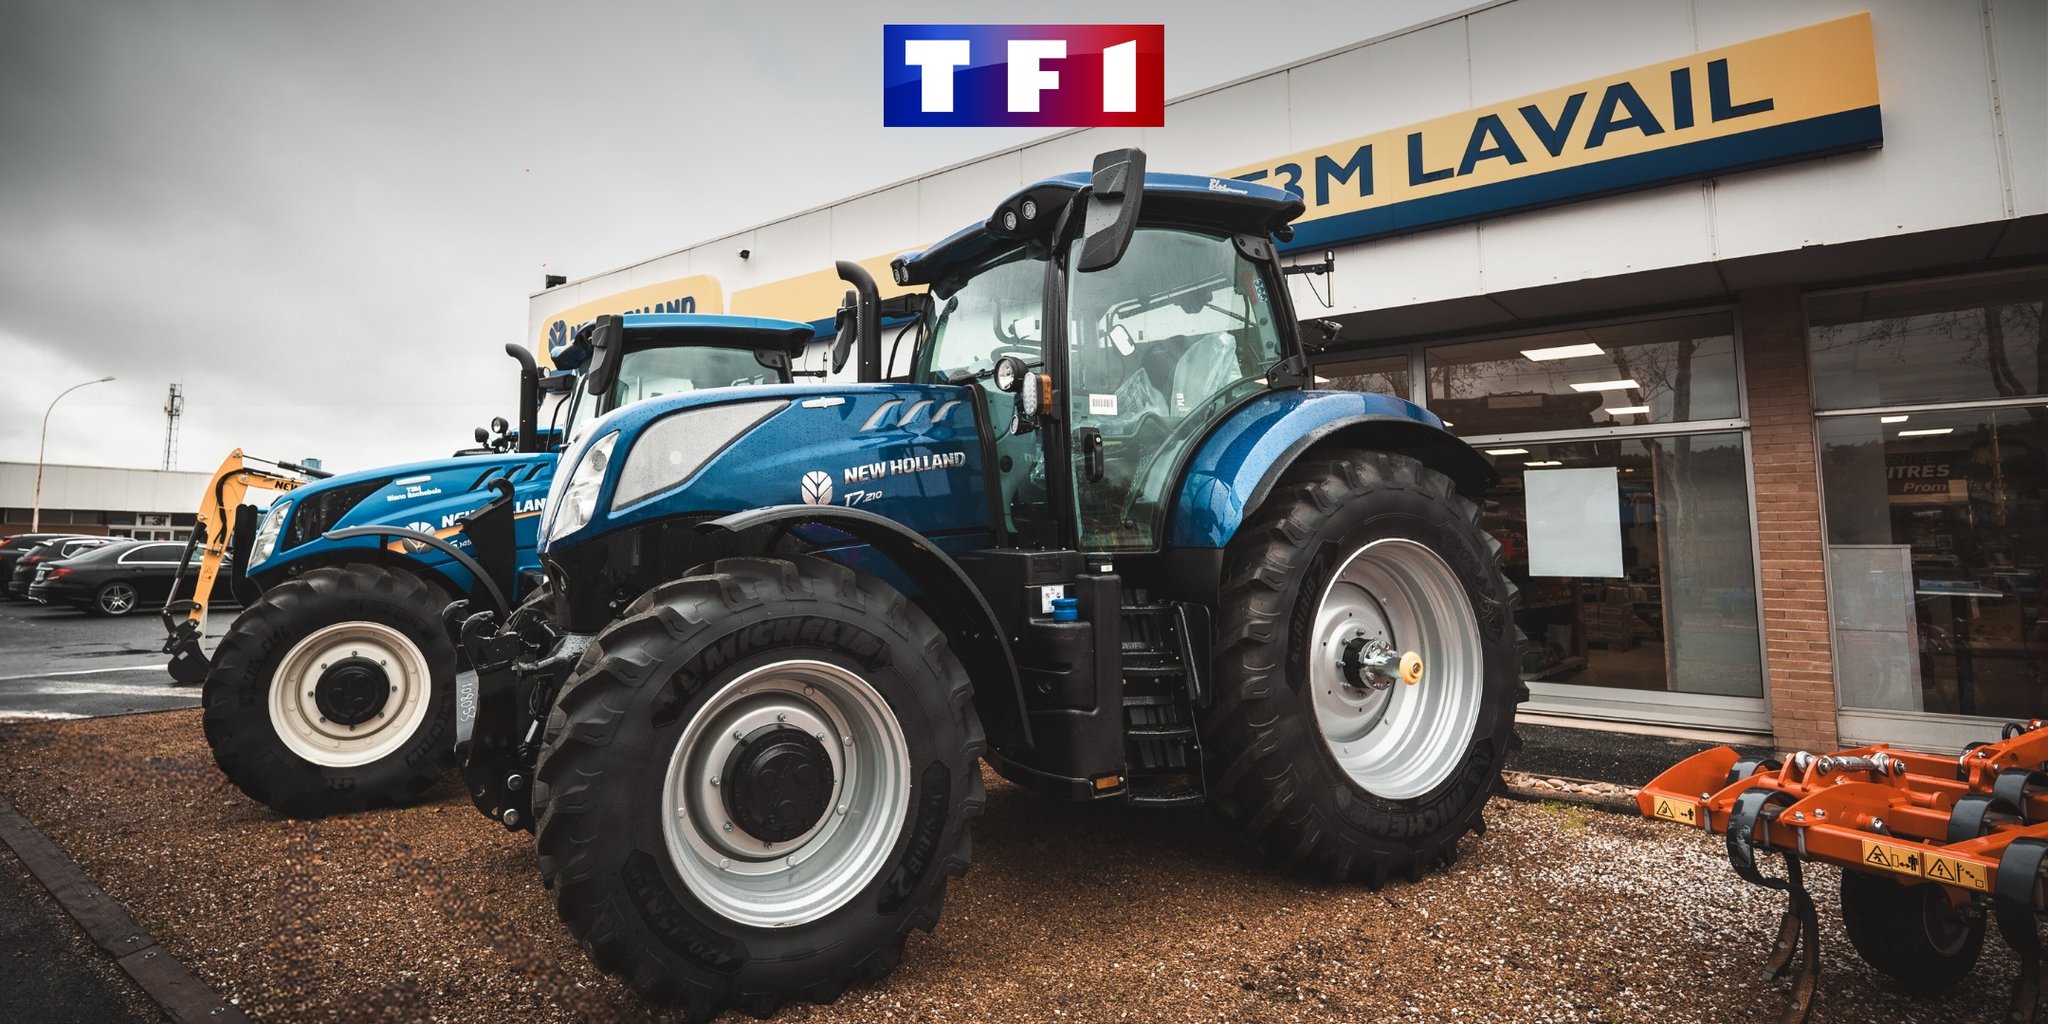 Reportage TF1 sur le monde agricole et T3M